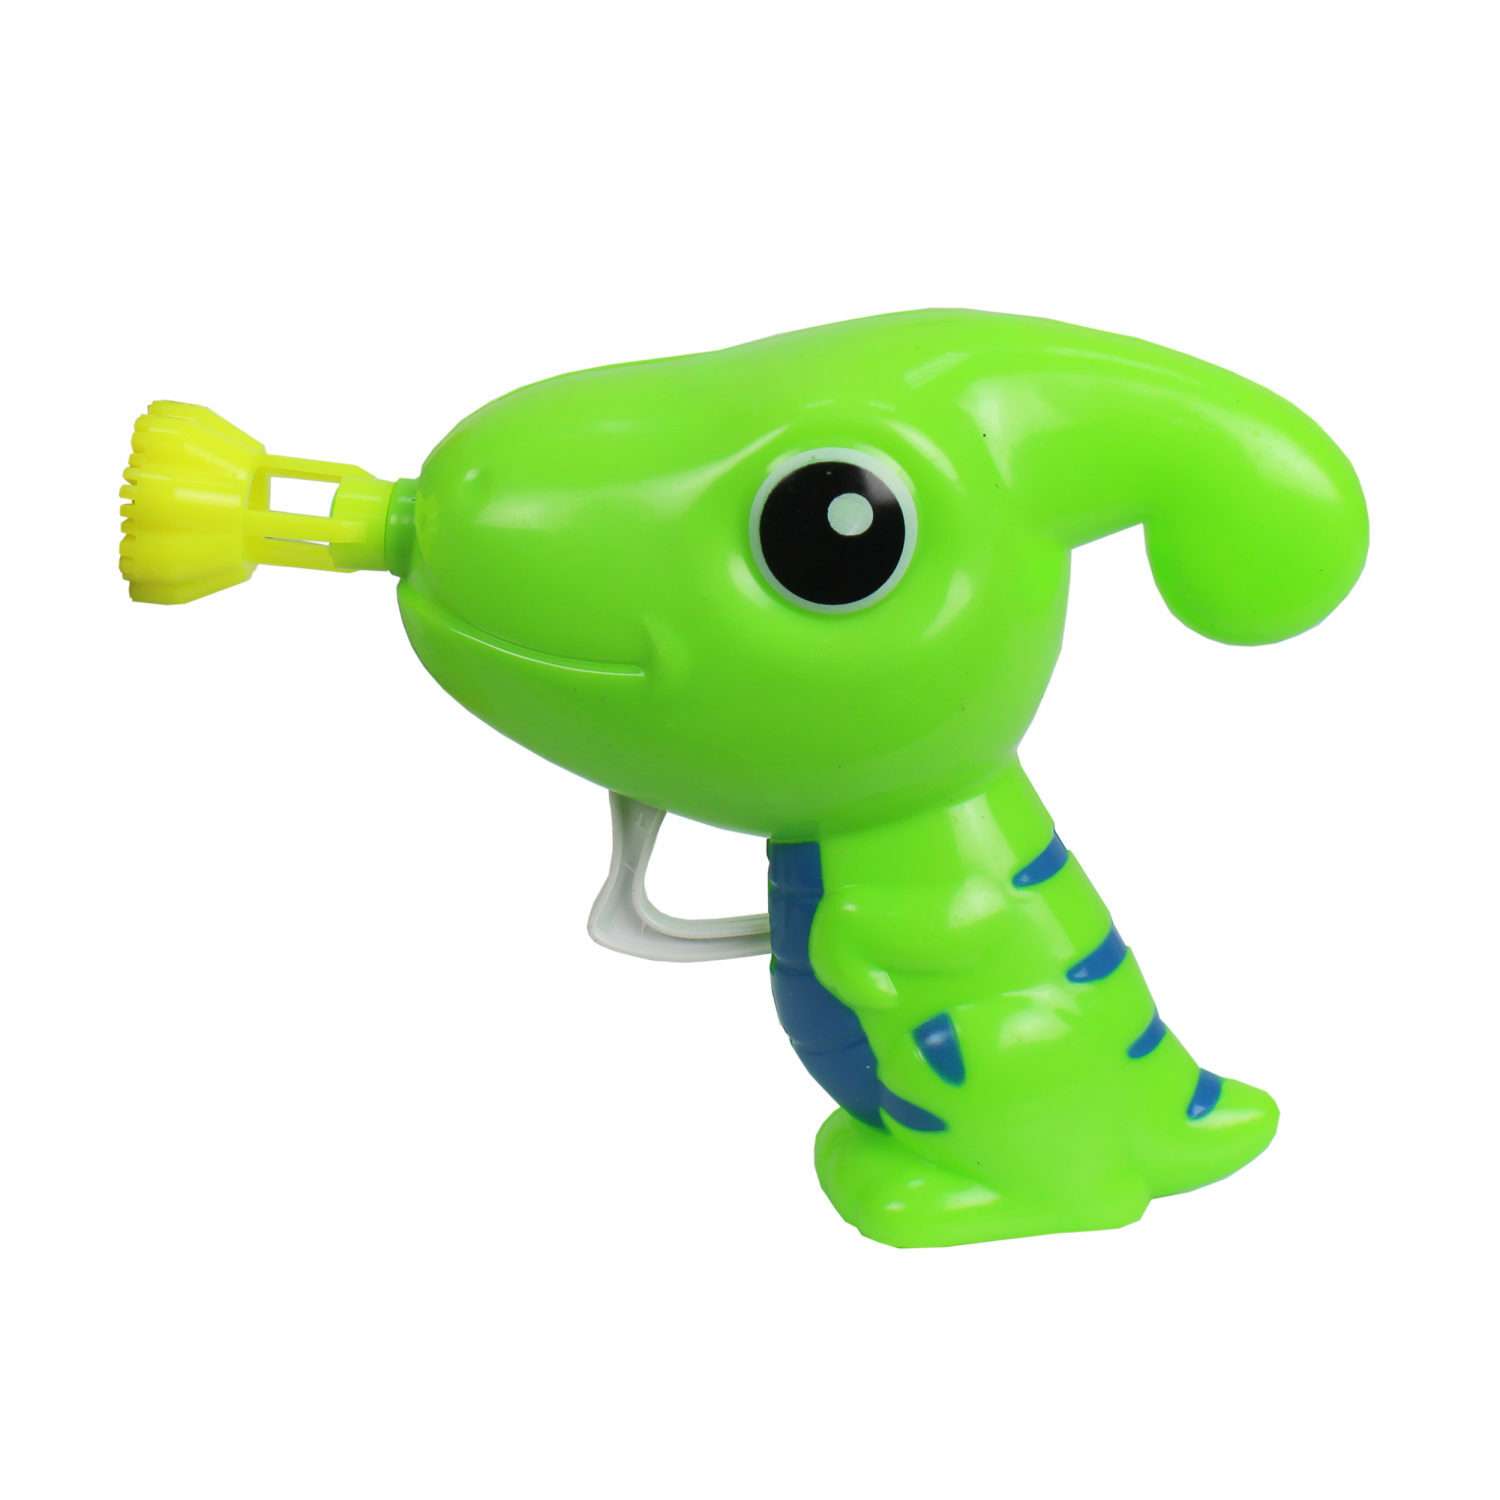 Генератор мыльных пузырей Мы-шарики 1YOY с раствором Динозаврик пистолет бластер аппарат детские игрушки для улицы и дома - фото 1